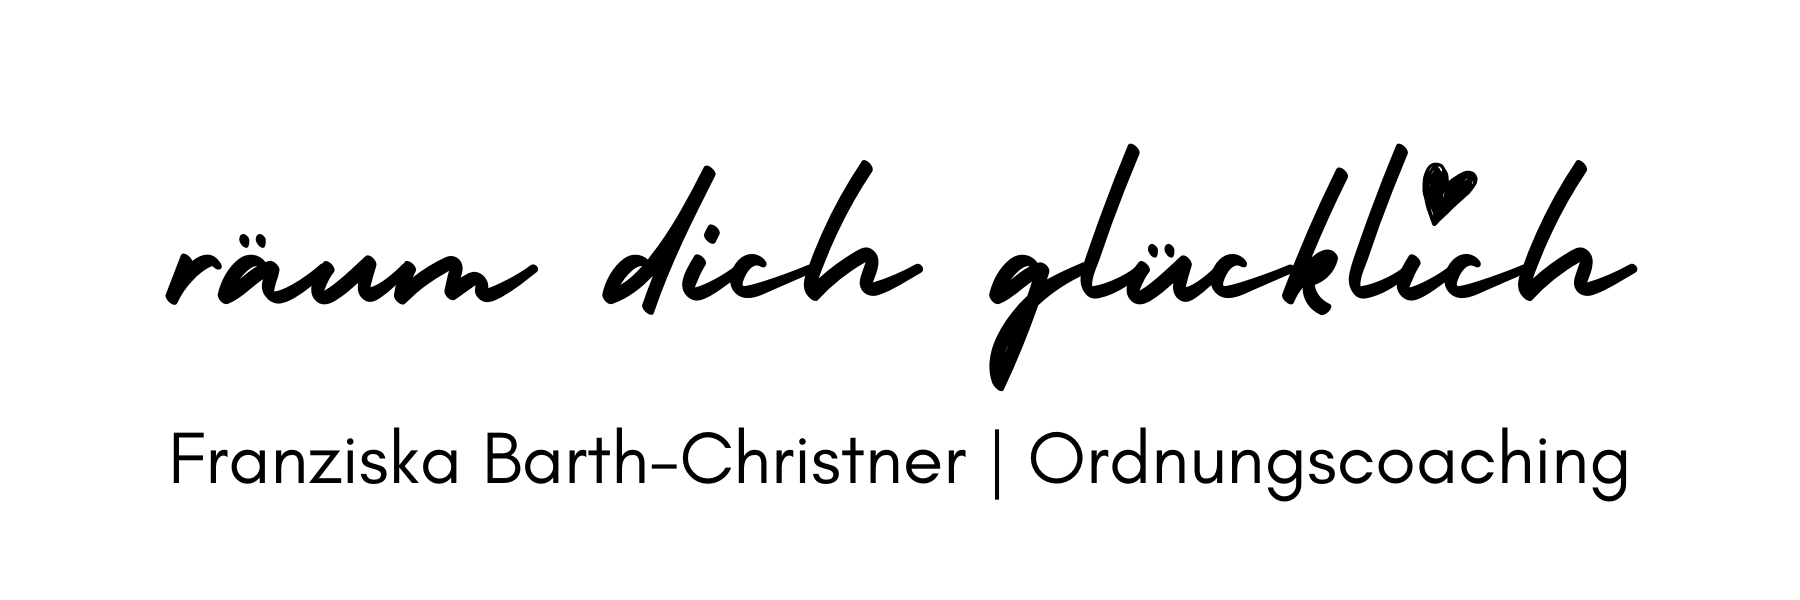 Logo von Ordnungscoach Franziska Barth-Christner